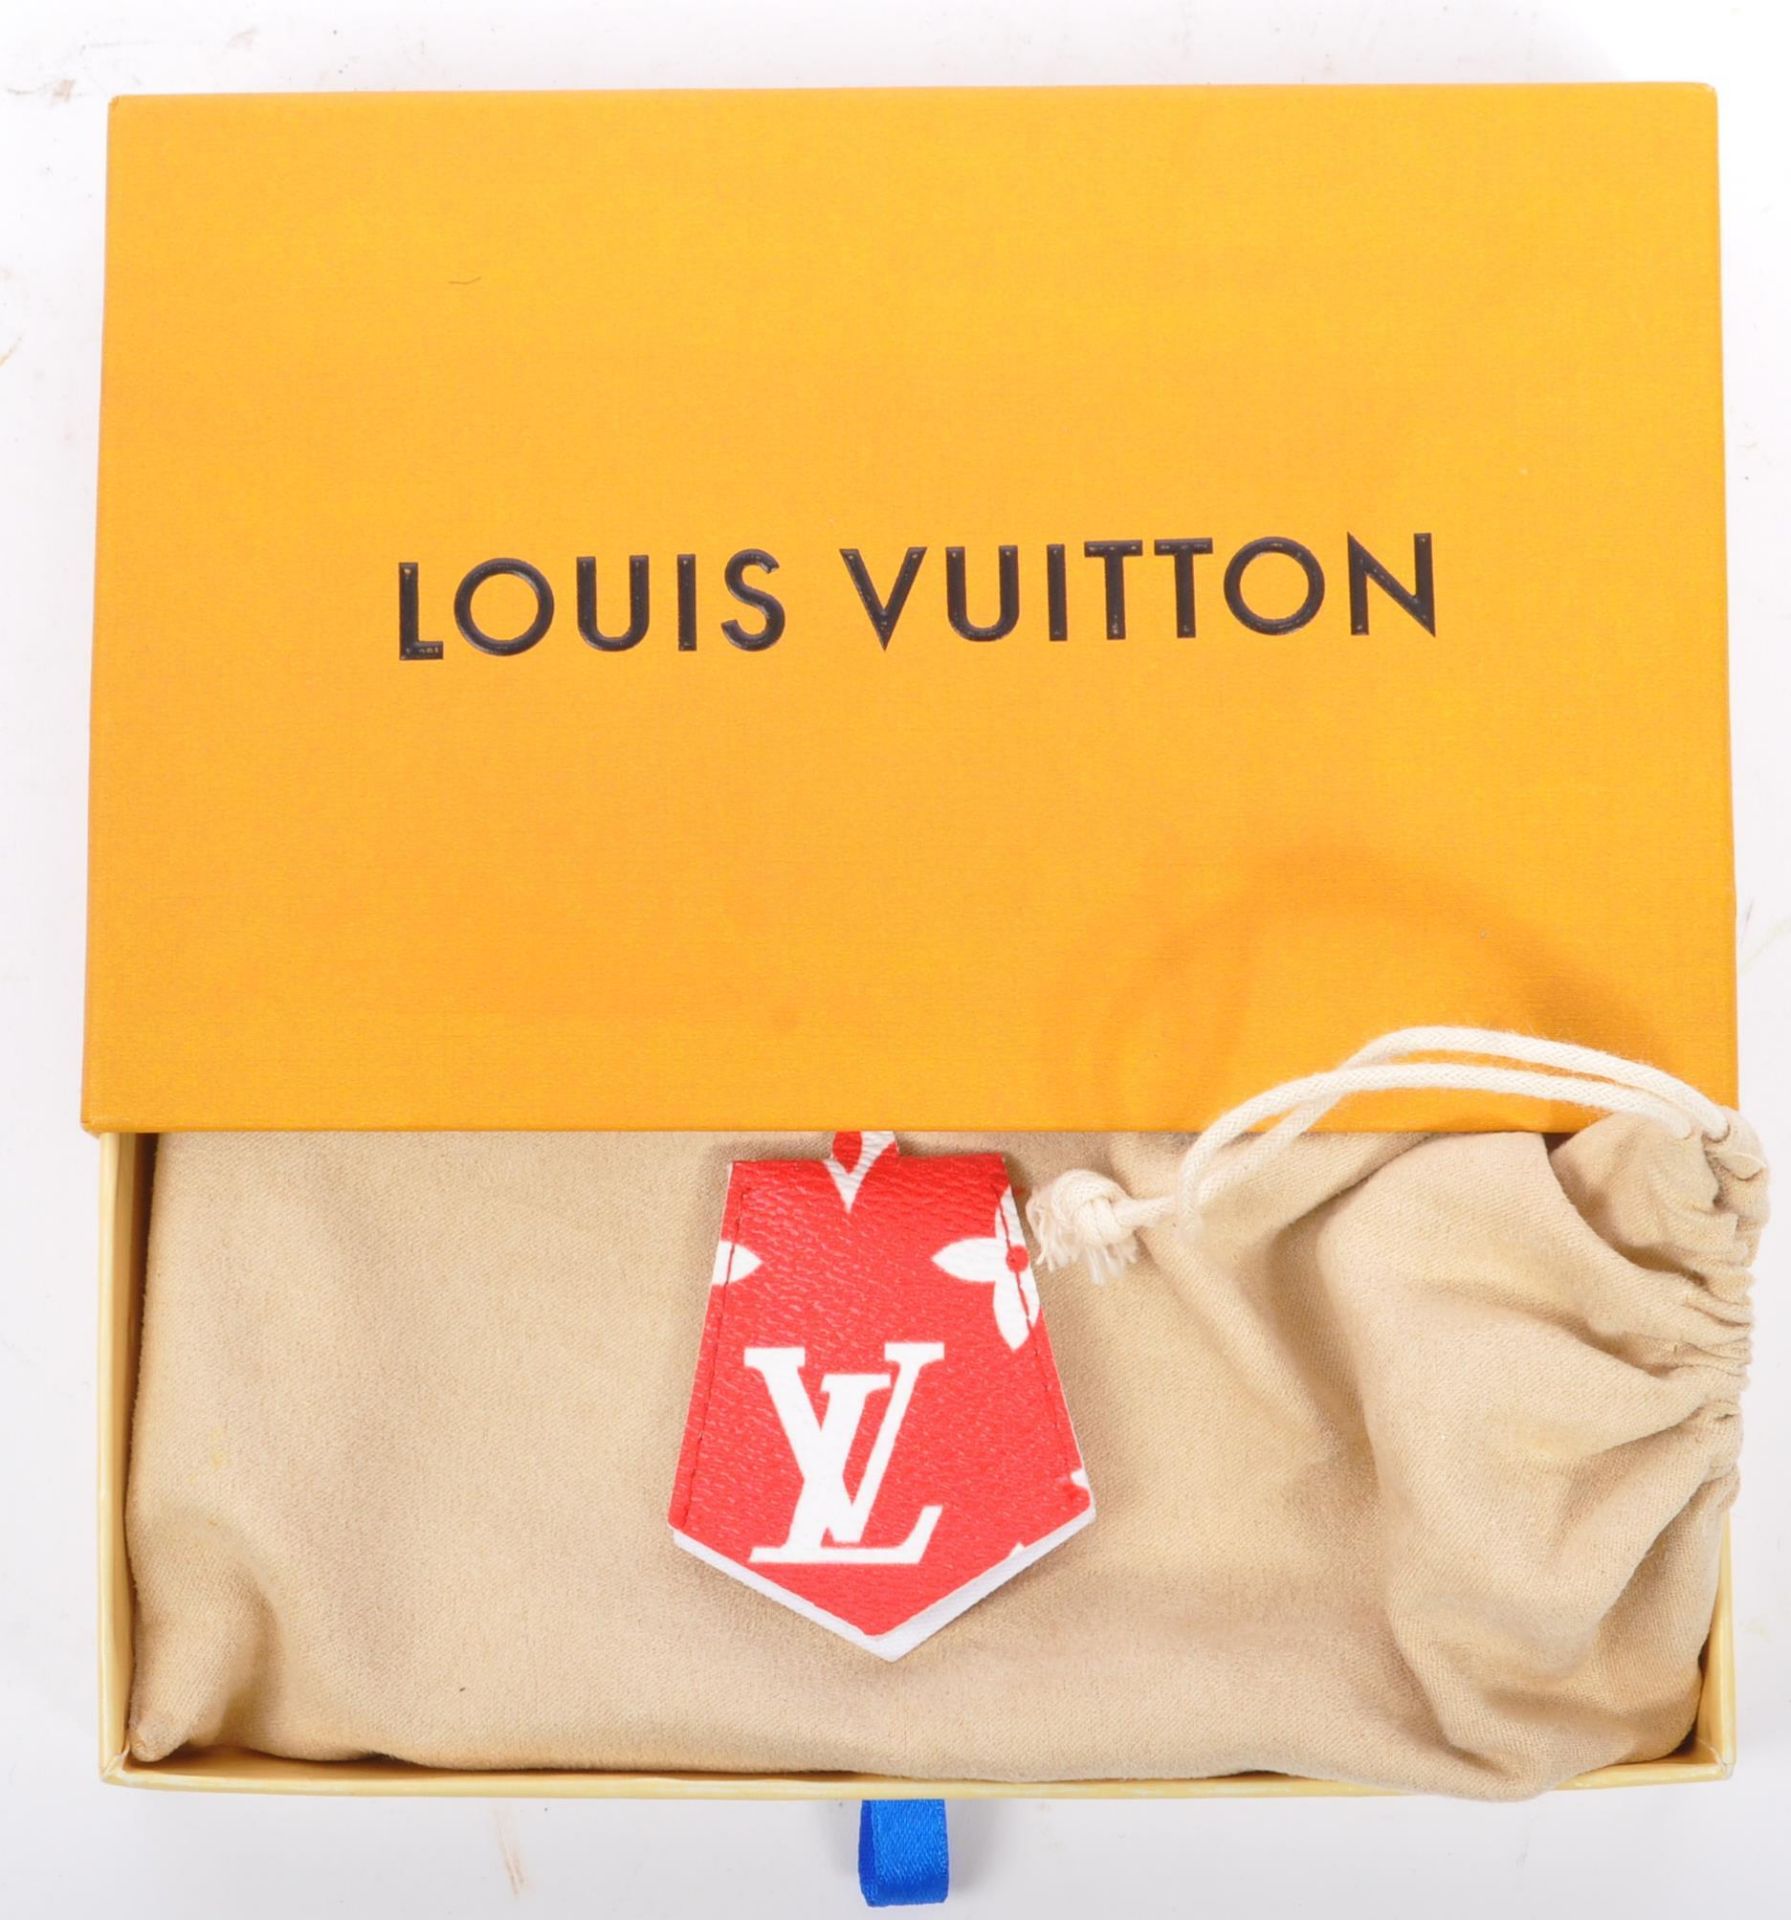 LOUIS VUITTON X SUPREME RED / GOLD IPHONE 7 CASE IN BOX - Bild 3 aus 7